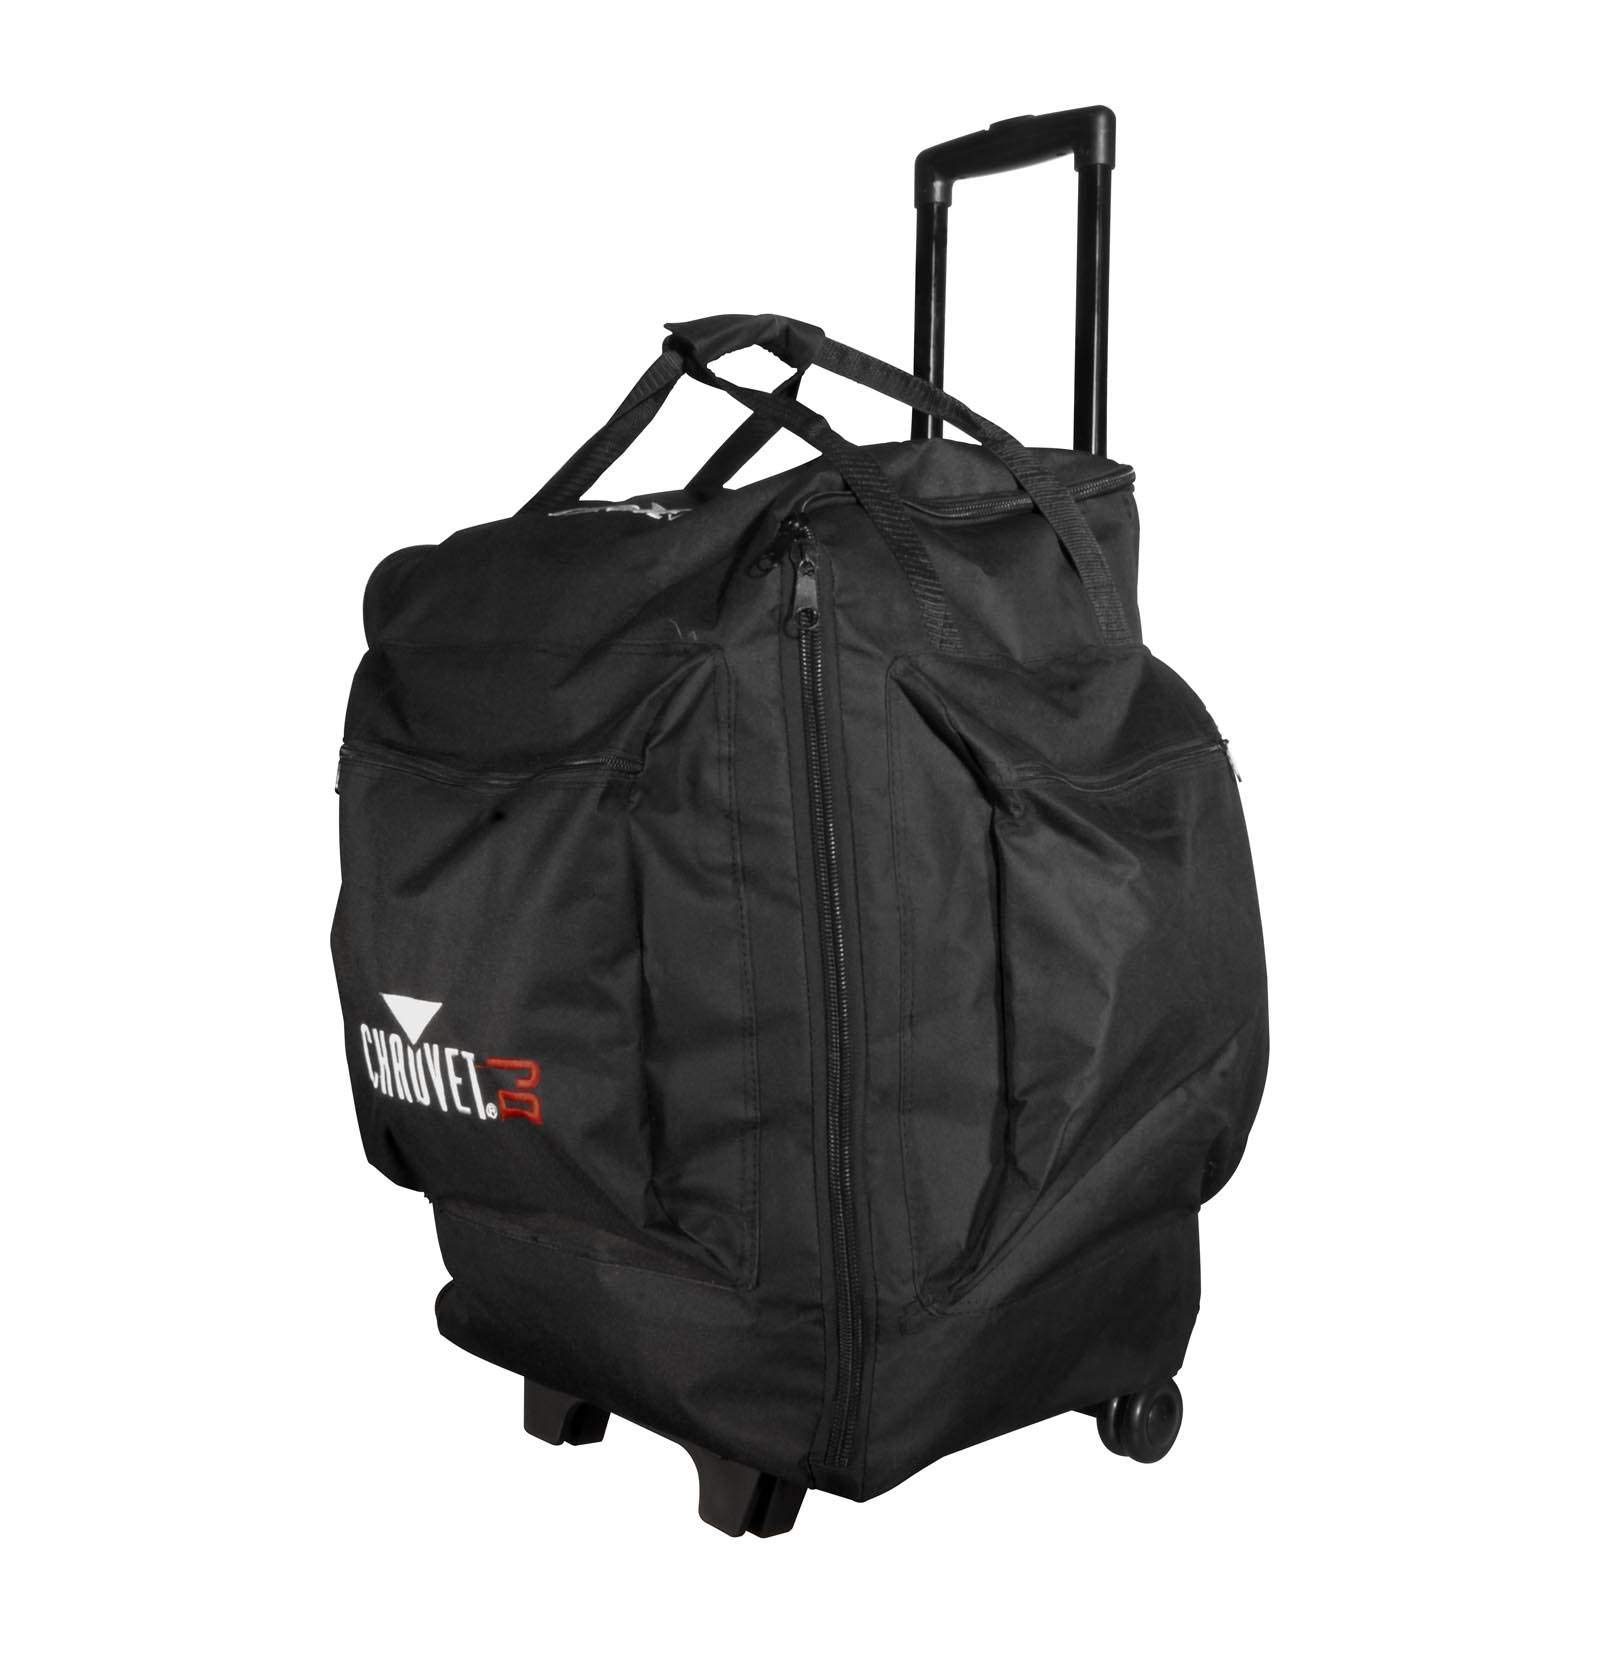 CHAUVET DJ CHS-50 VIP Large Rolling Travel Bag for DJ Lights,Black